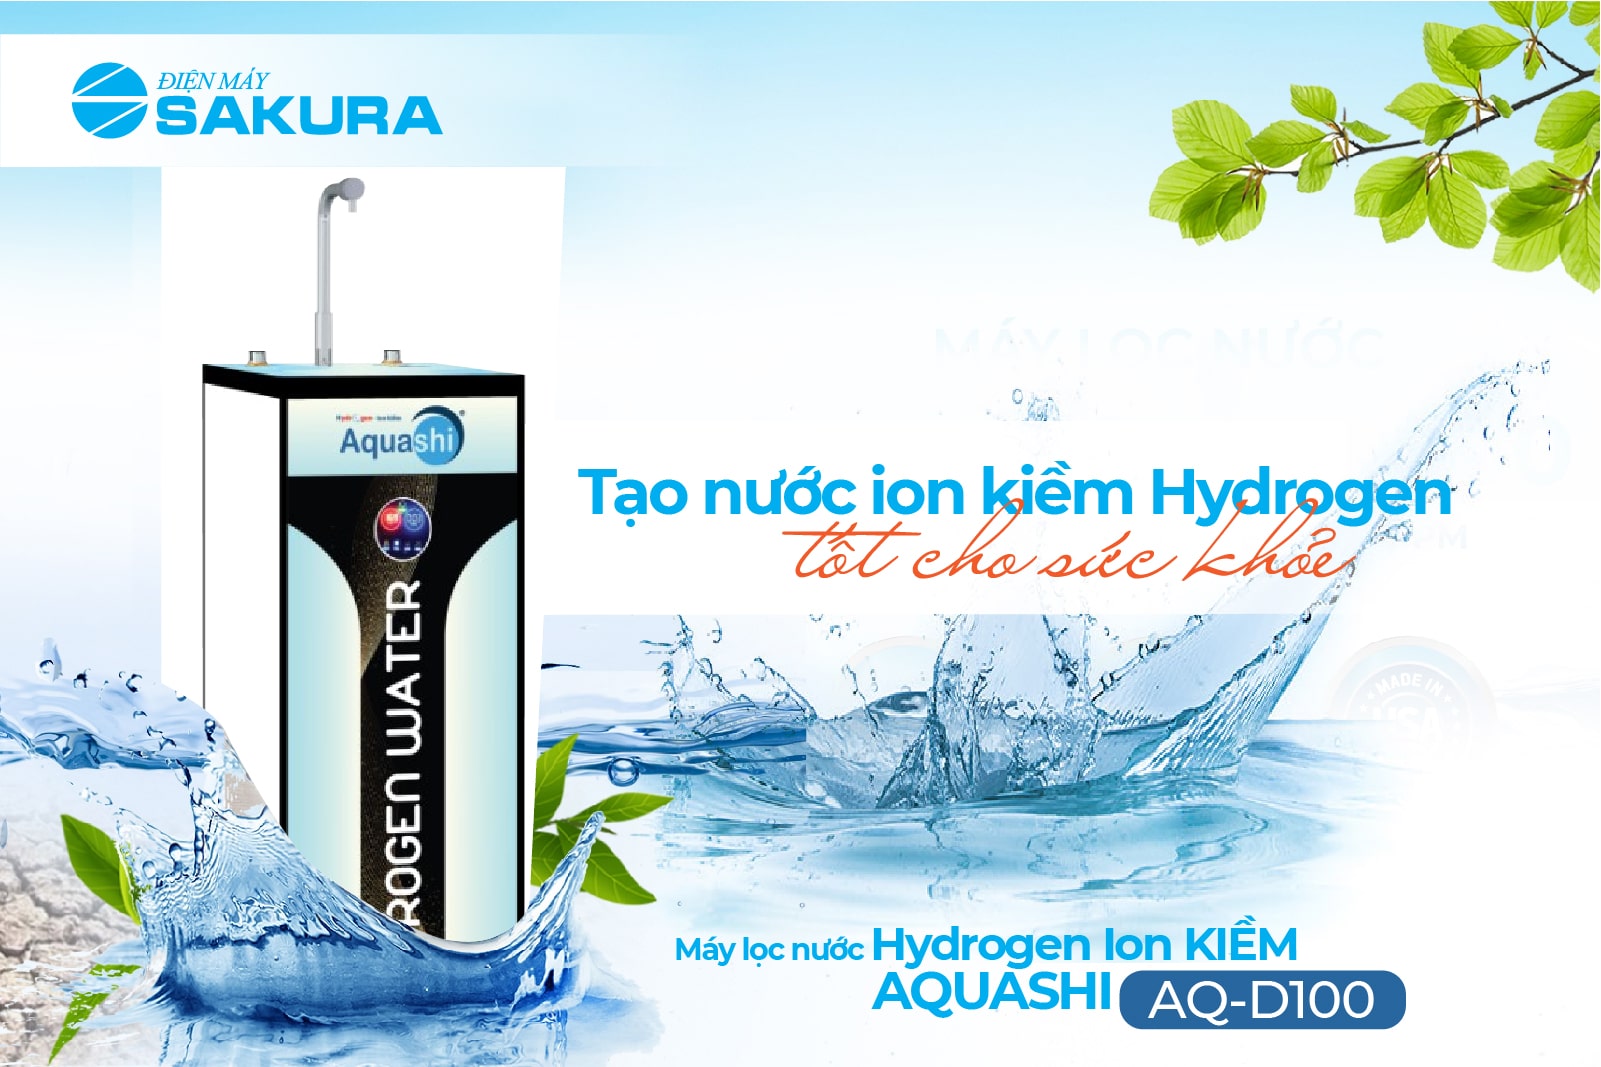 Máy lọc nước Hydrogen ion kiềm Aquashi AQ-D100 3 chế độ nước tiện lợi 